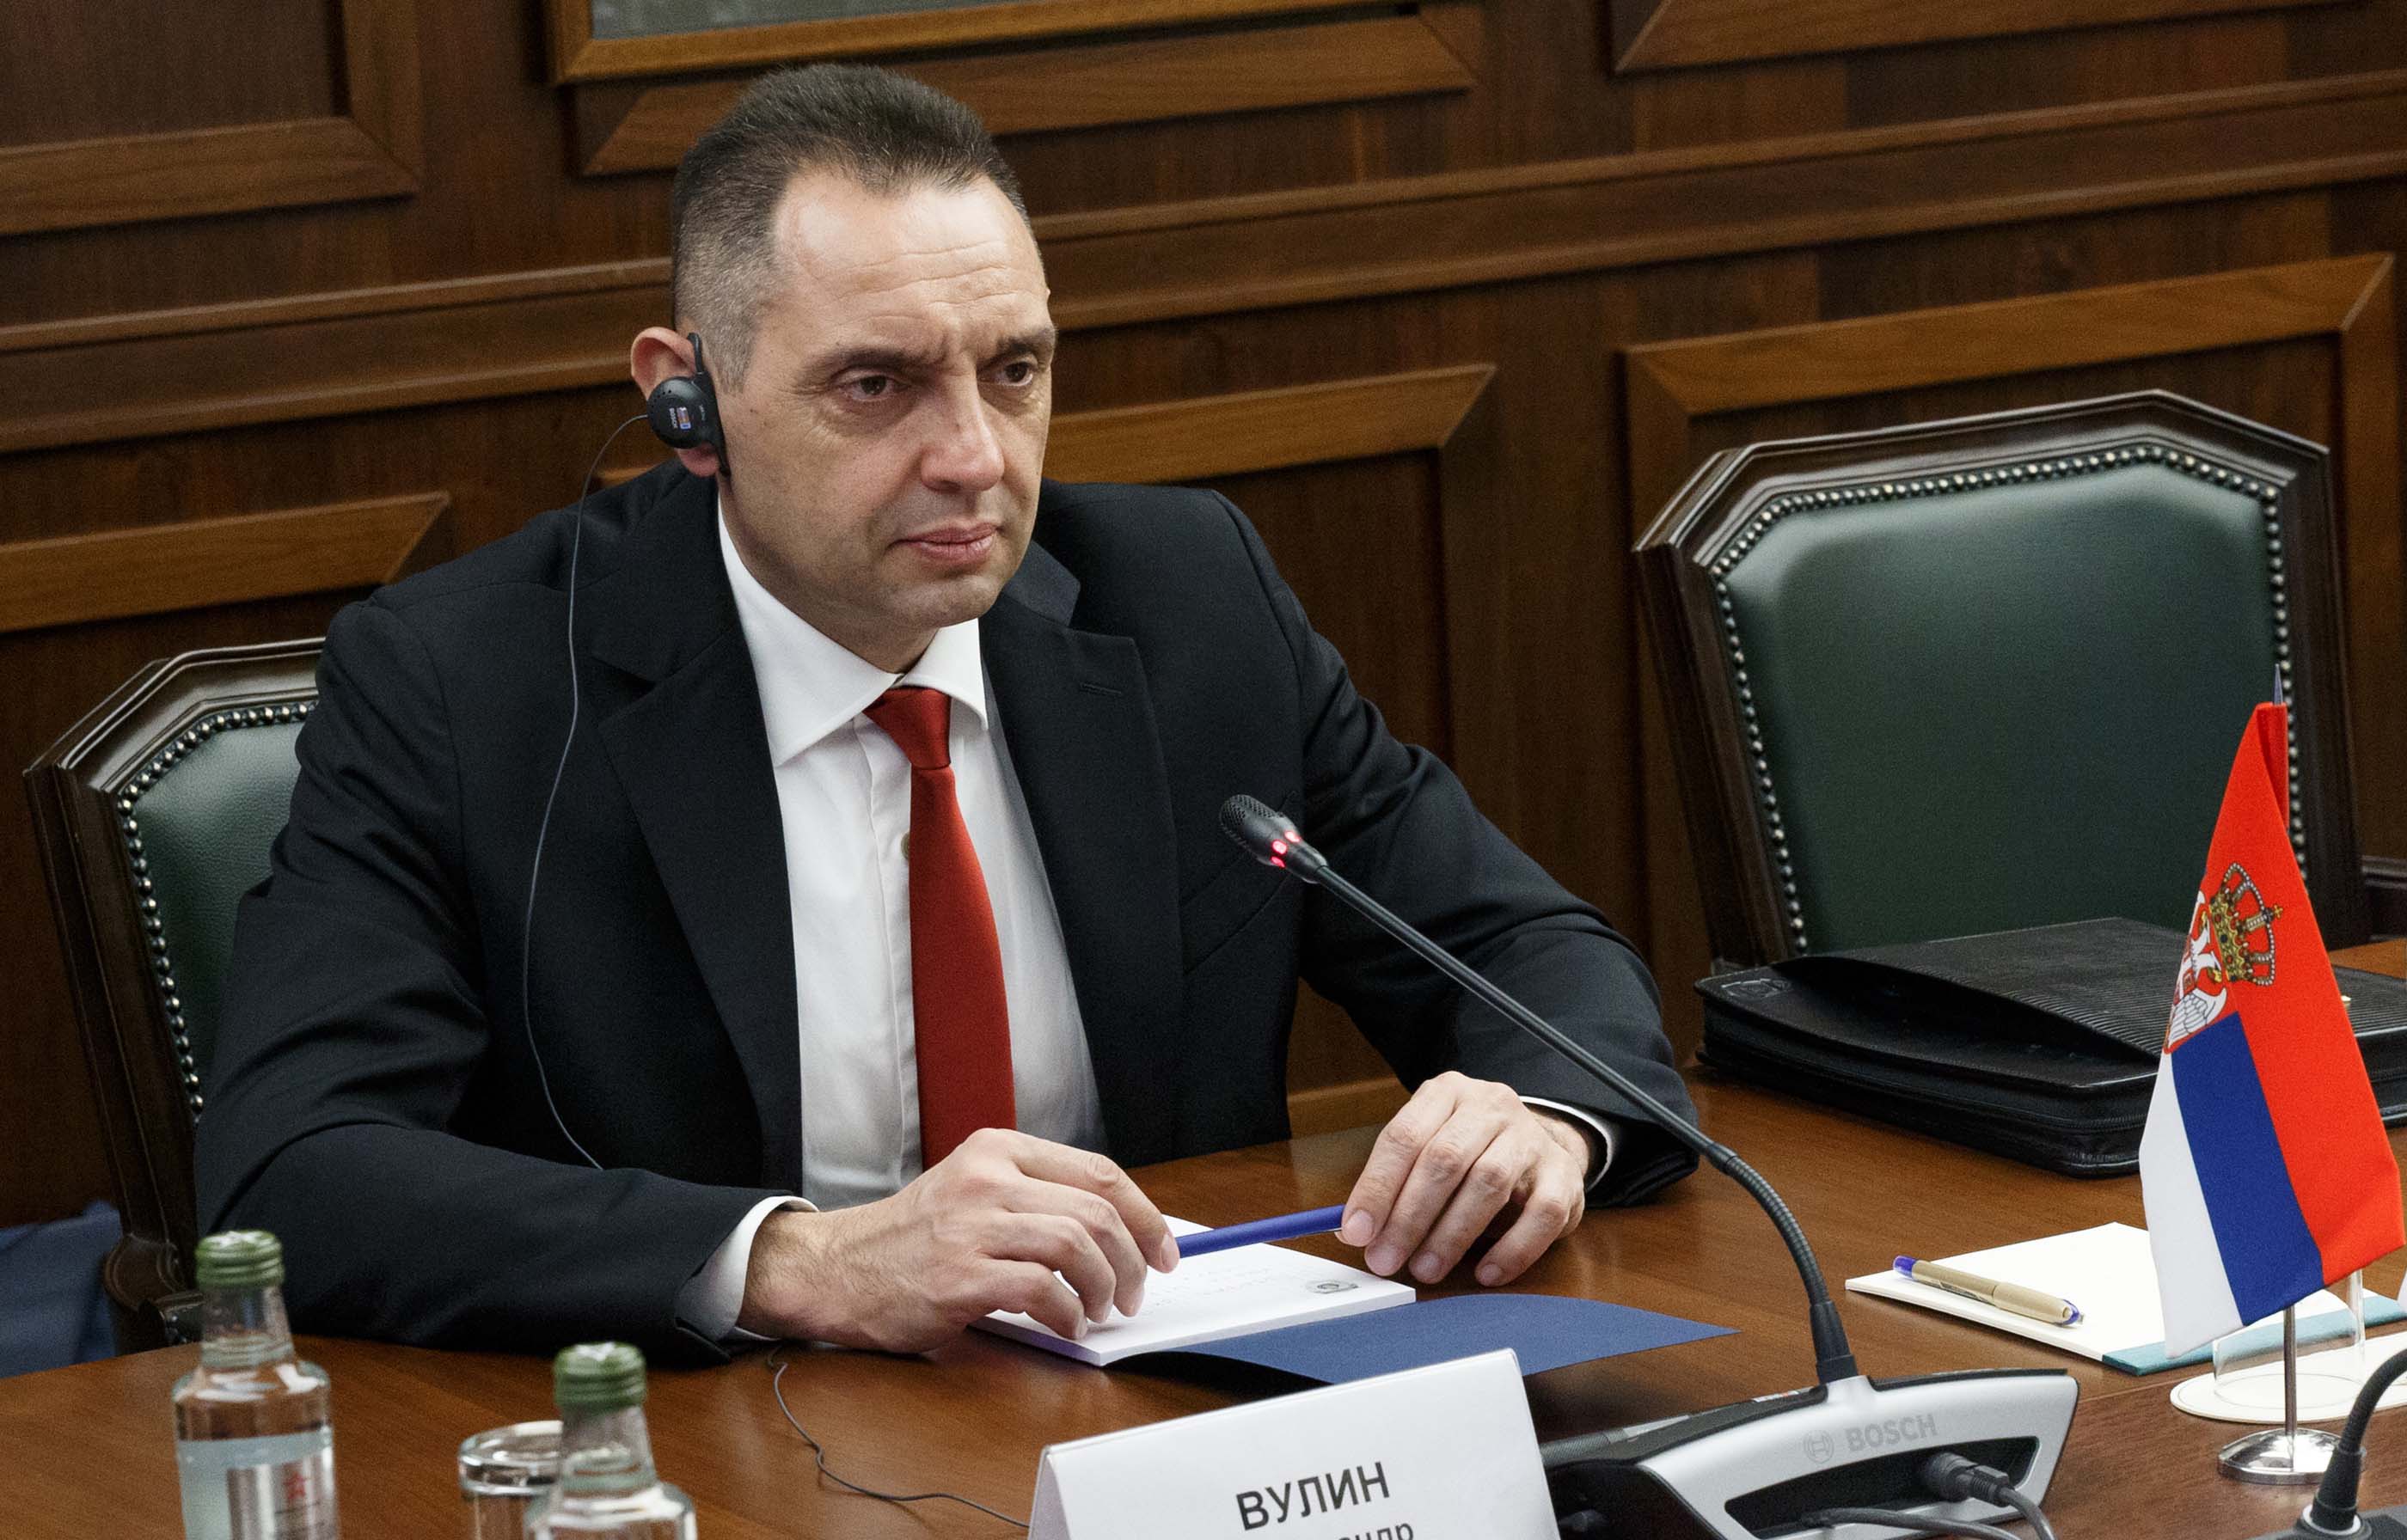 Министри Вулин и Шојгу сагласили су се да сарадња између Србије и Руске Федерације никада није била на овако висoком нивоу